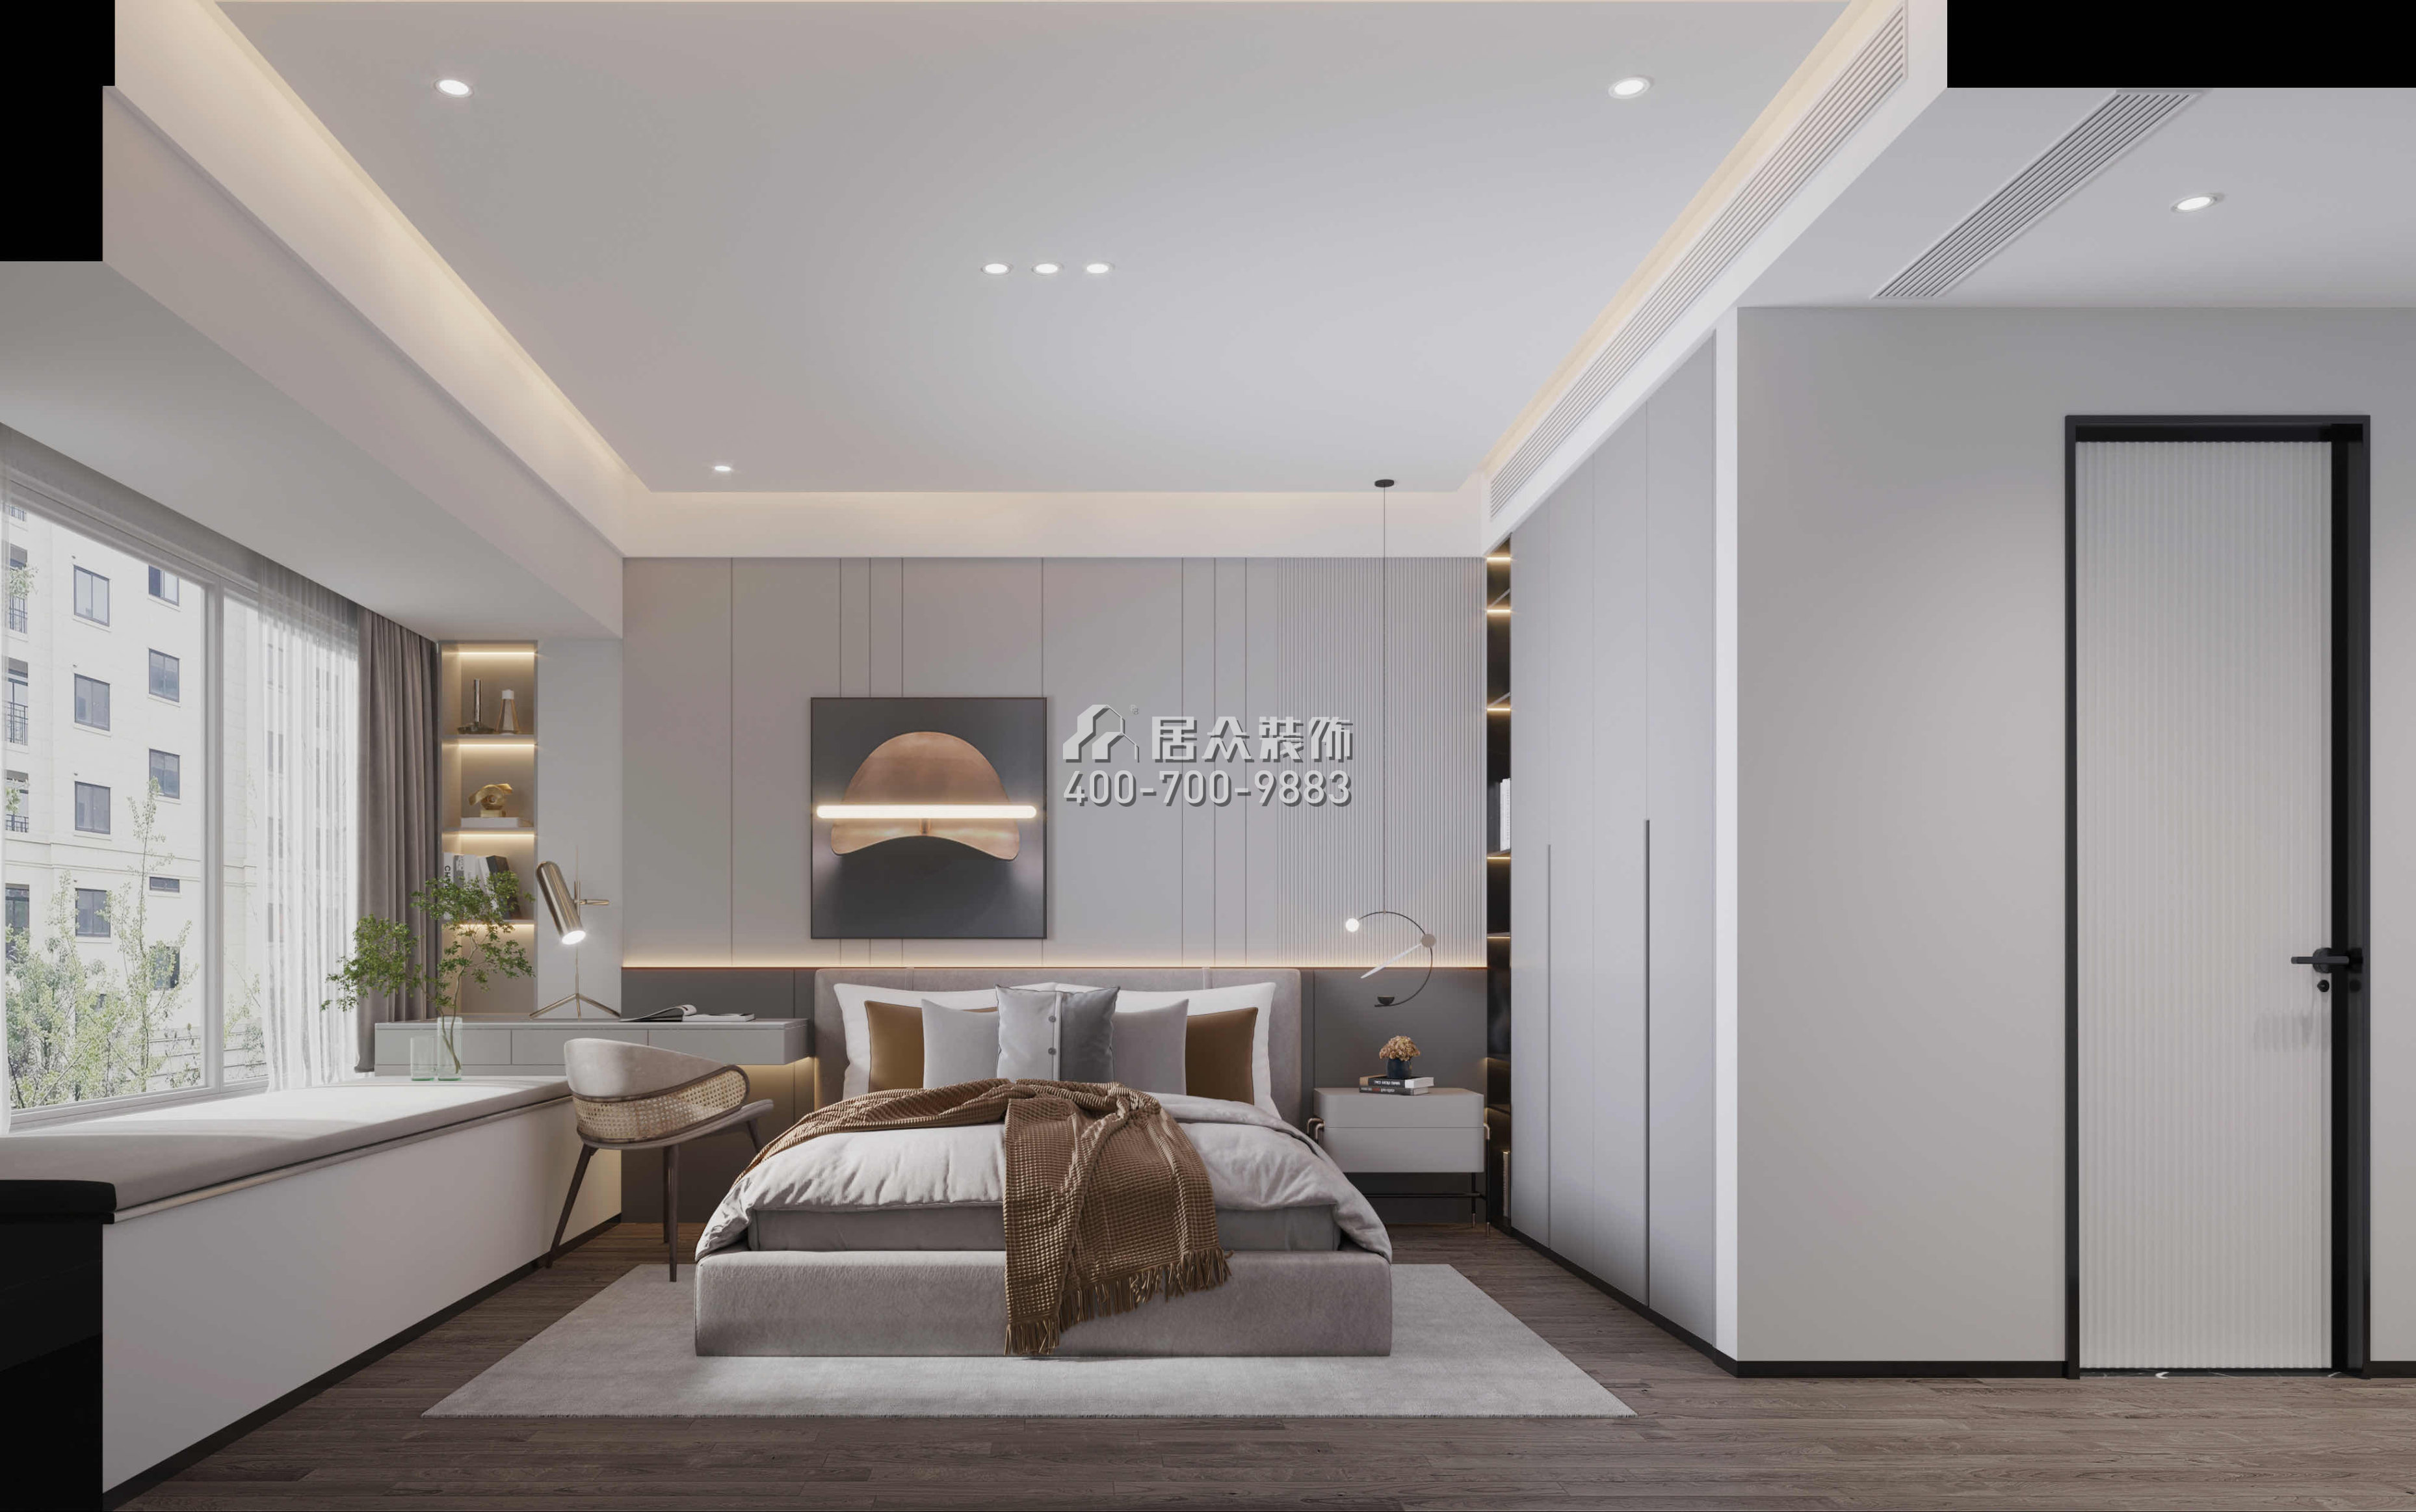 天健天驕南苑123平方米現代簡約風格平層戶型臥室裝修效果圖